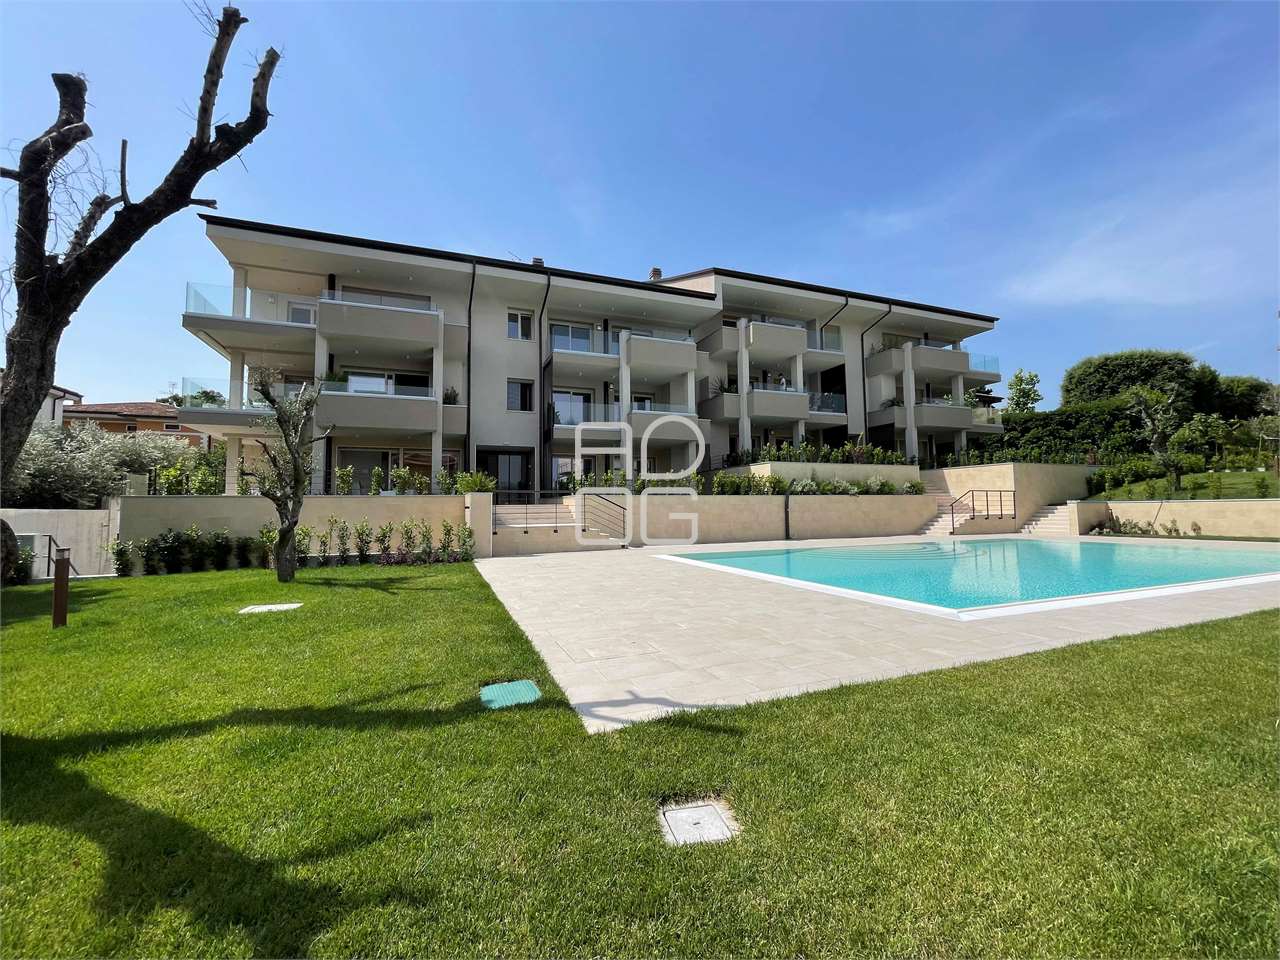 Nuovo appartamento classe A con giardino privato a Desenzano del Garda